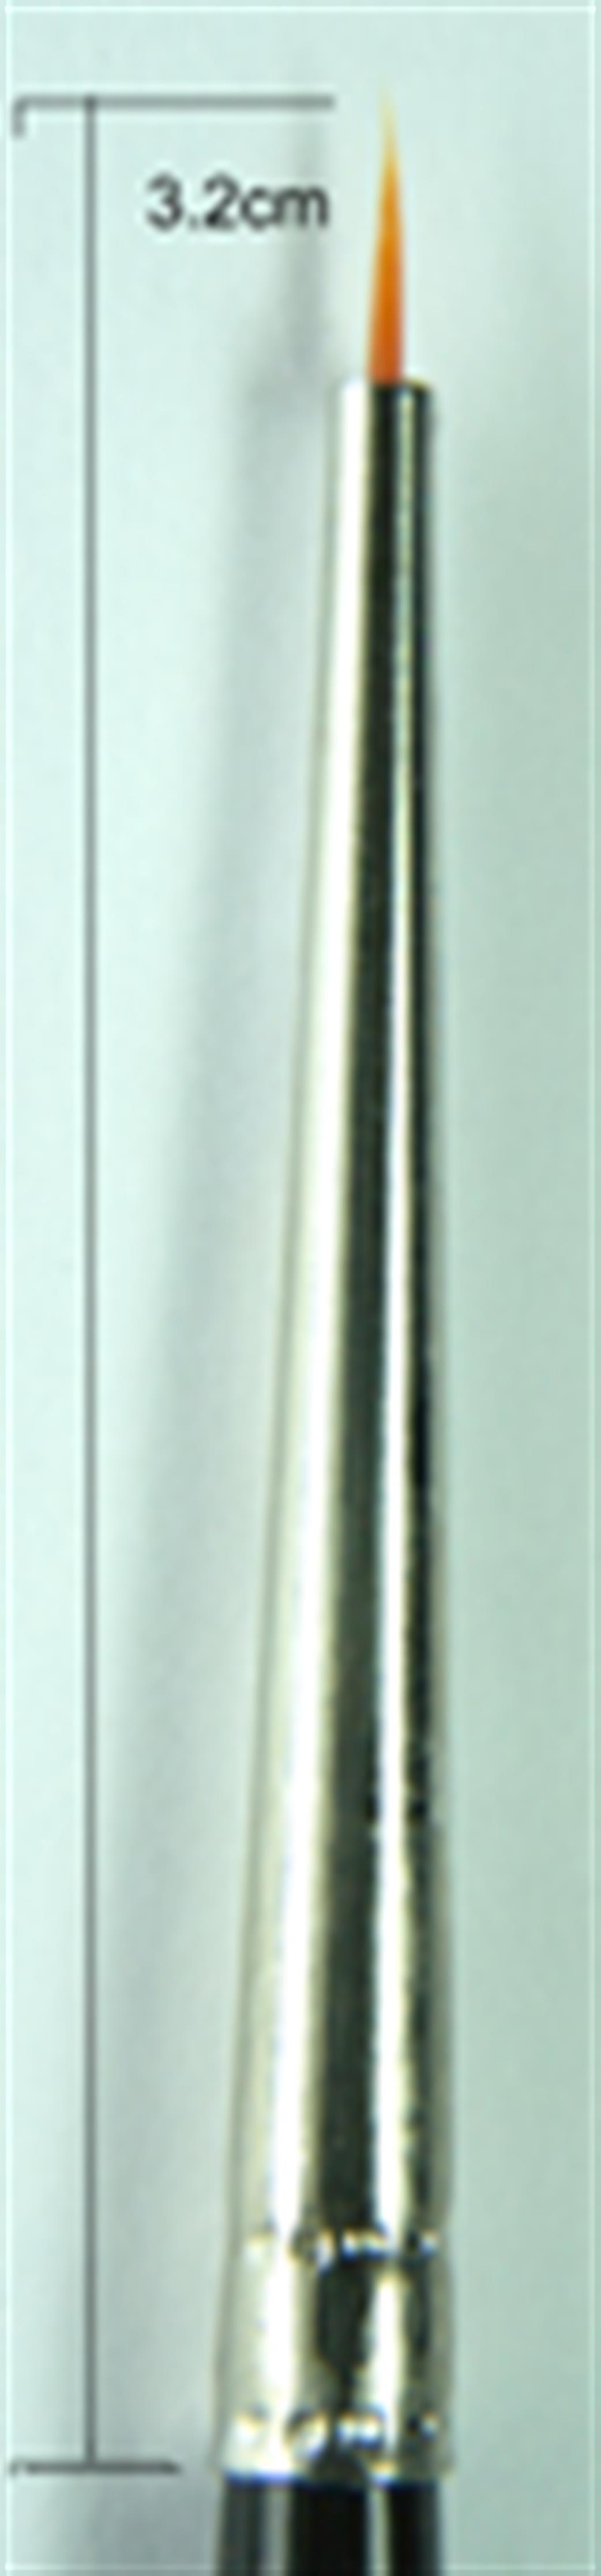 Premier P41-00000 00000 Toray Nylon Round Paint Brush